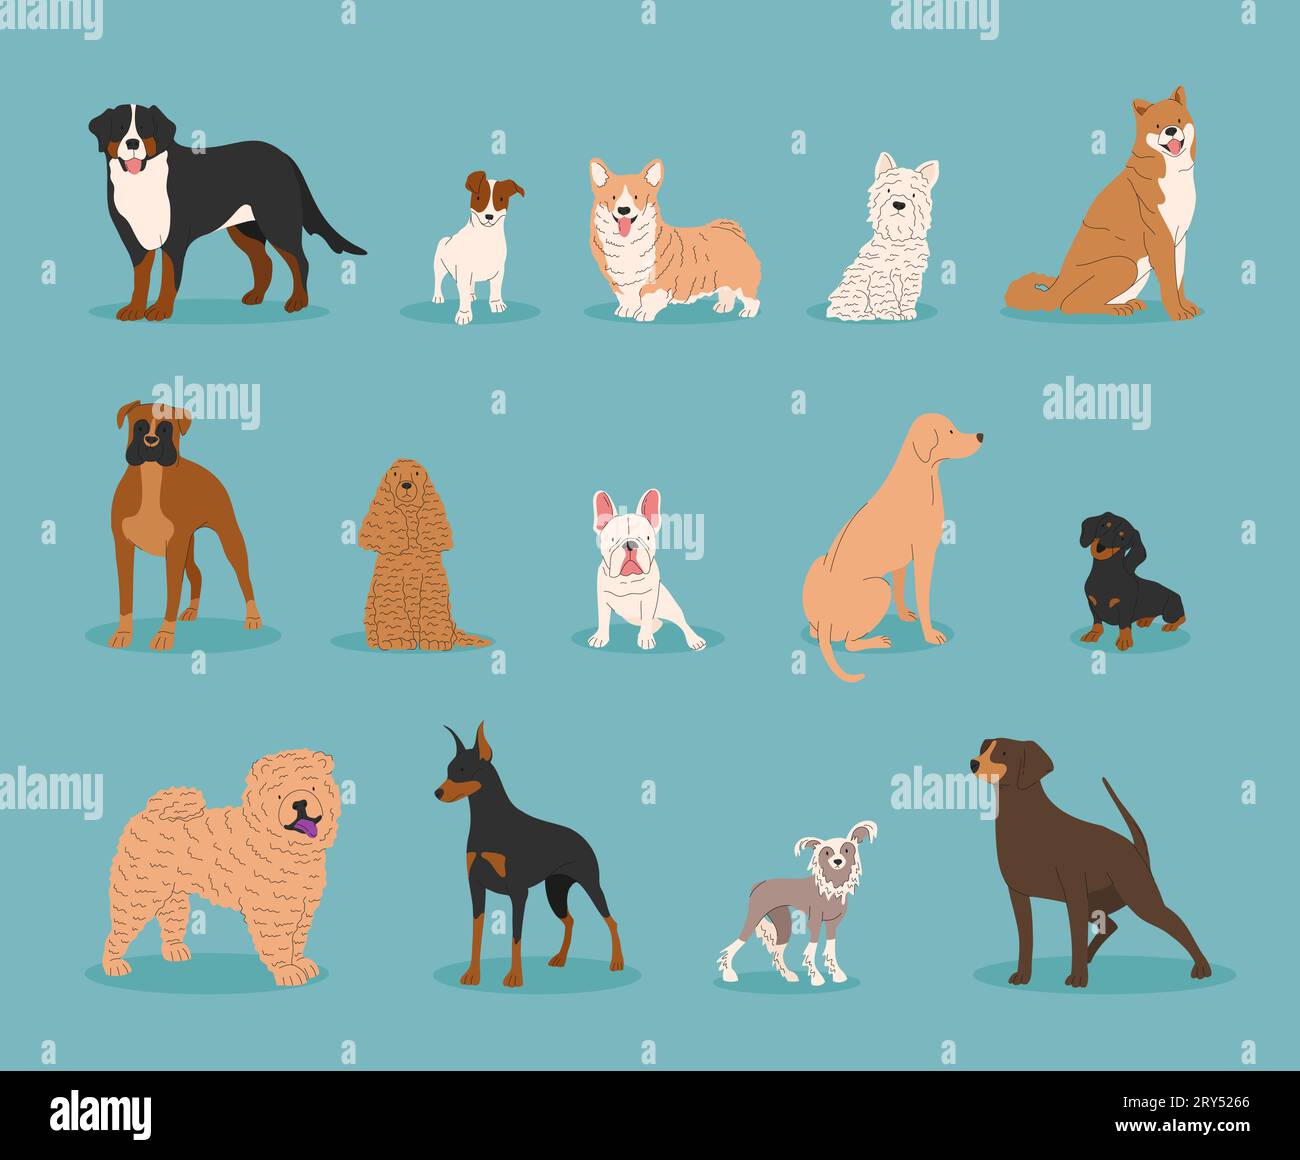 Ritiro cani. Illustrazione vettoriale di divertenti cartoni animati cani di diverse razze in stile piatto alla moda. Bulldog francese, Rottweiler, Dachshund, Doberman, Lab Illustrazione Vettoriale